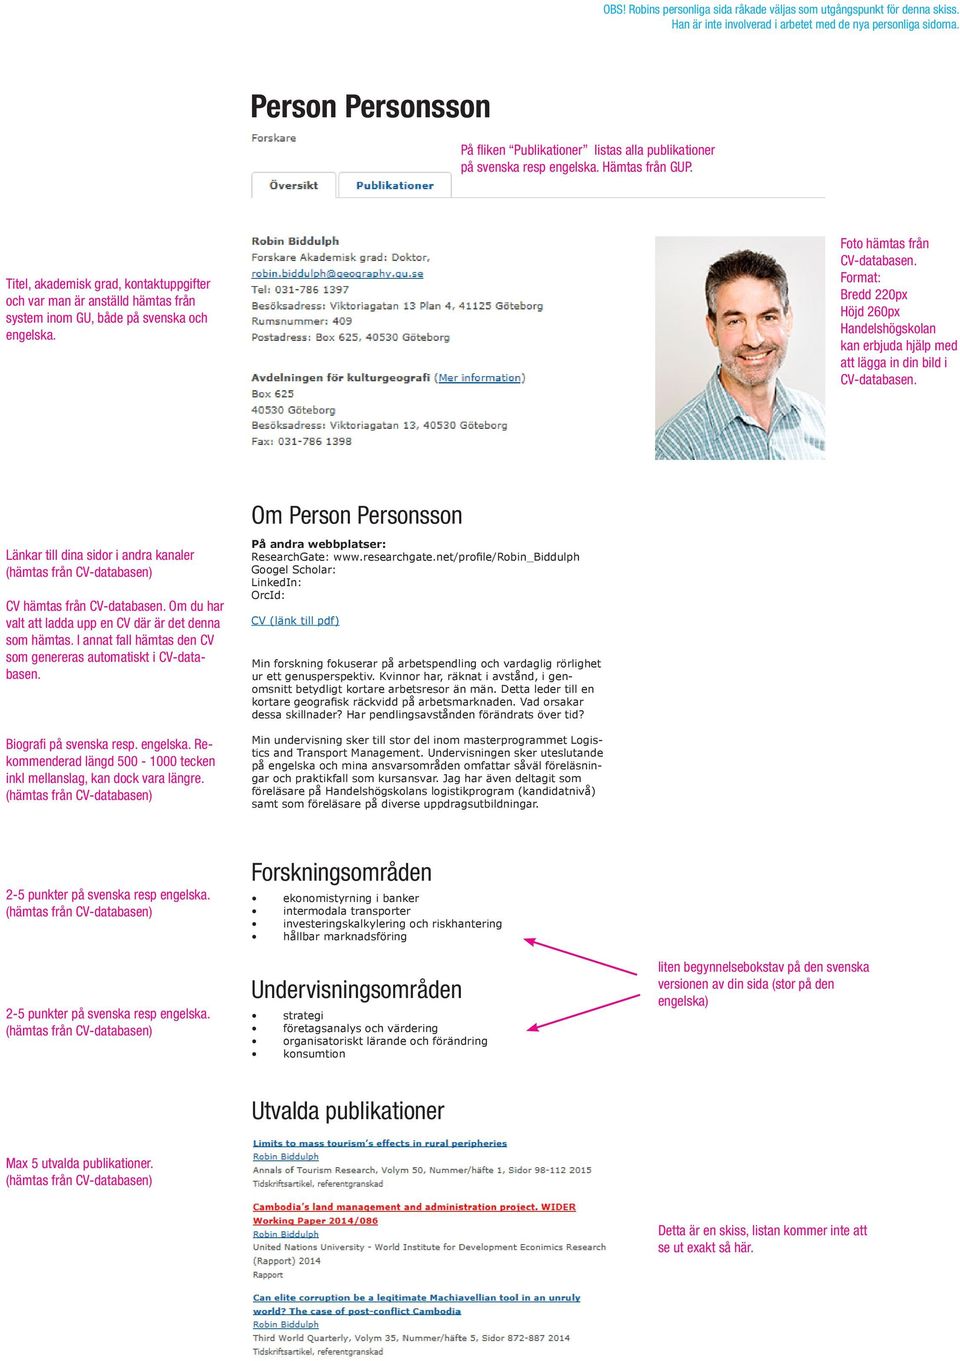 Titel, akademisk grad, kontaktuppgifter och var man är anställd hämtas från system inom GU, både på svenska och engelska. Foto hämtas från CV-databasen.